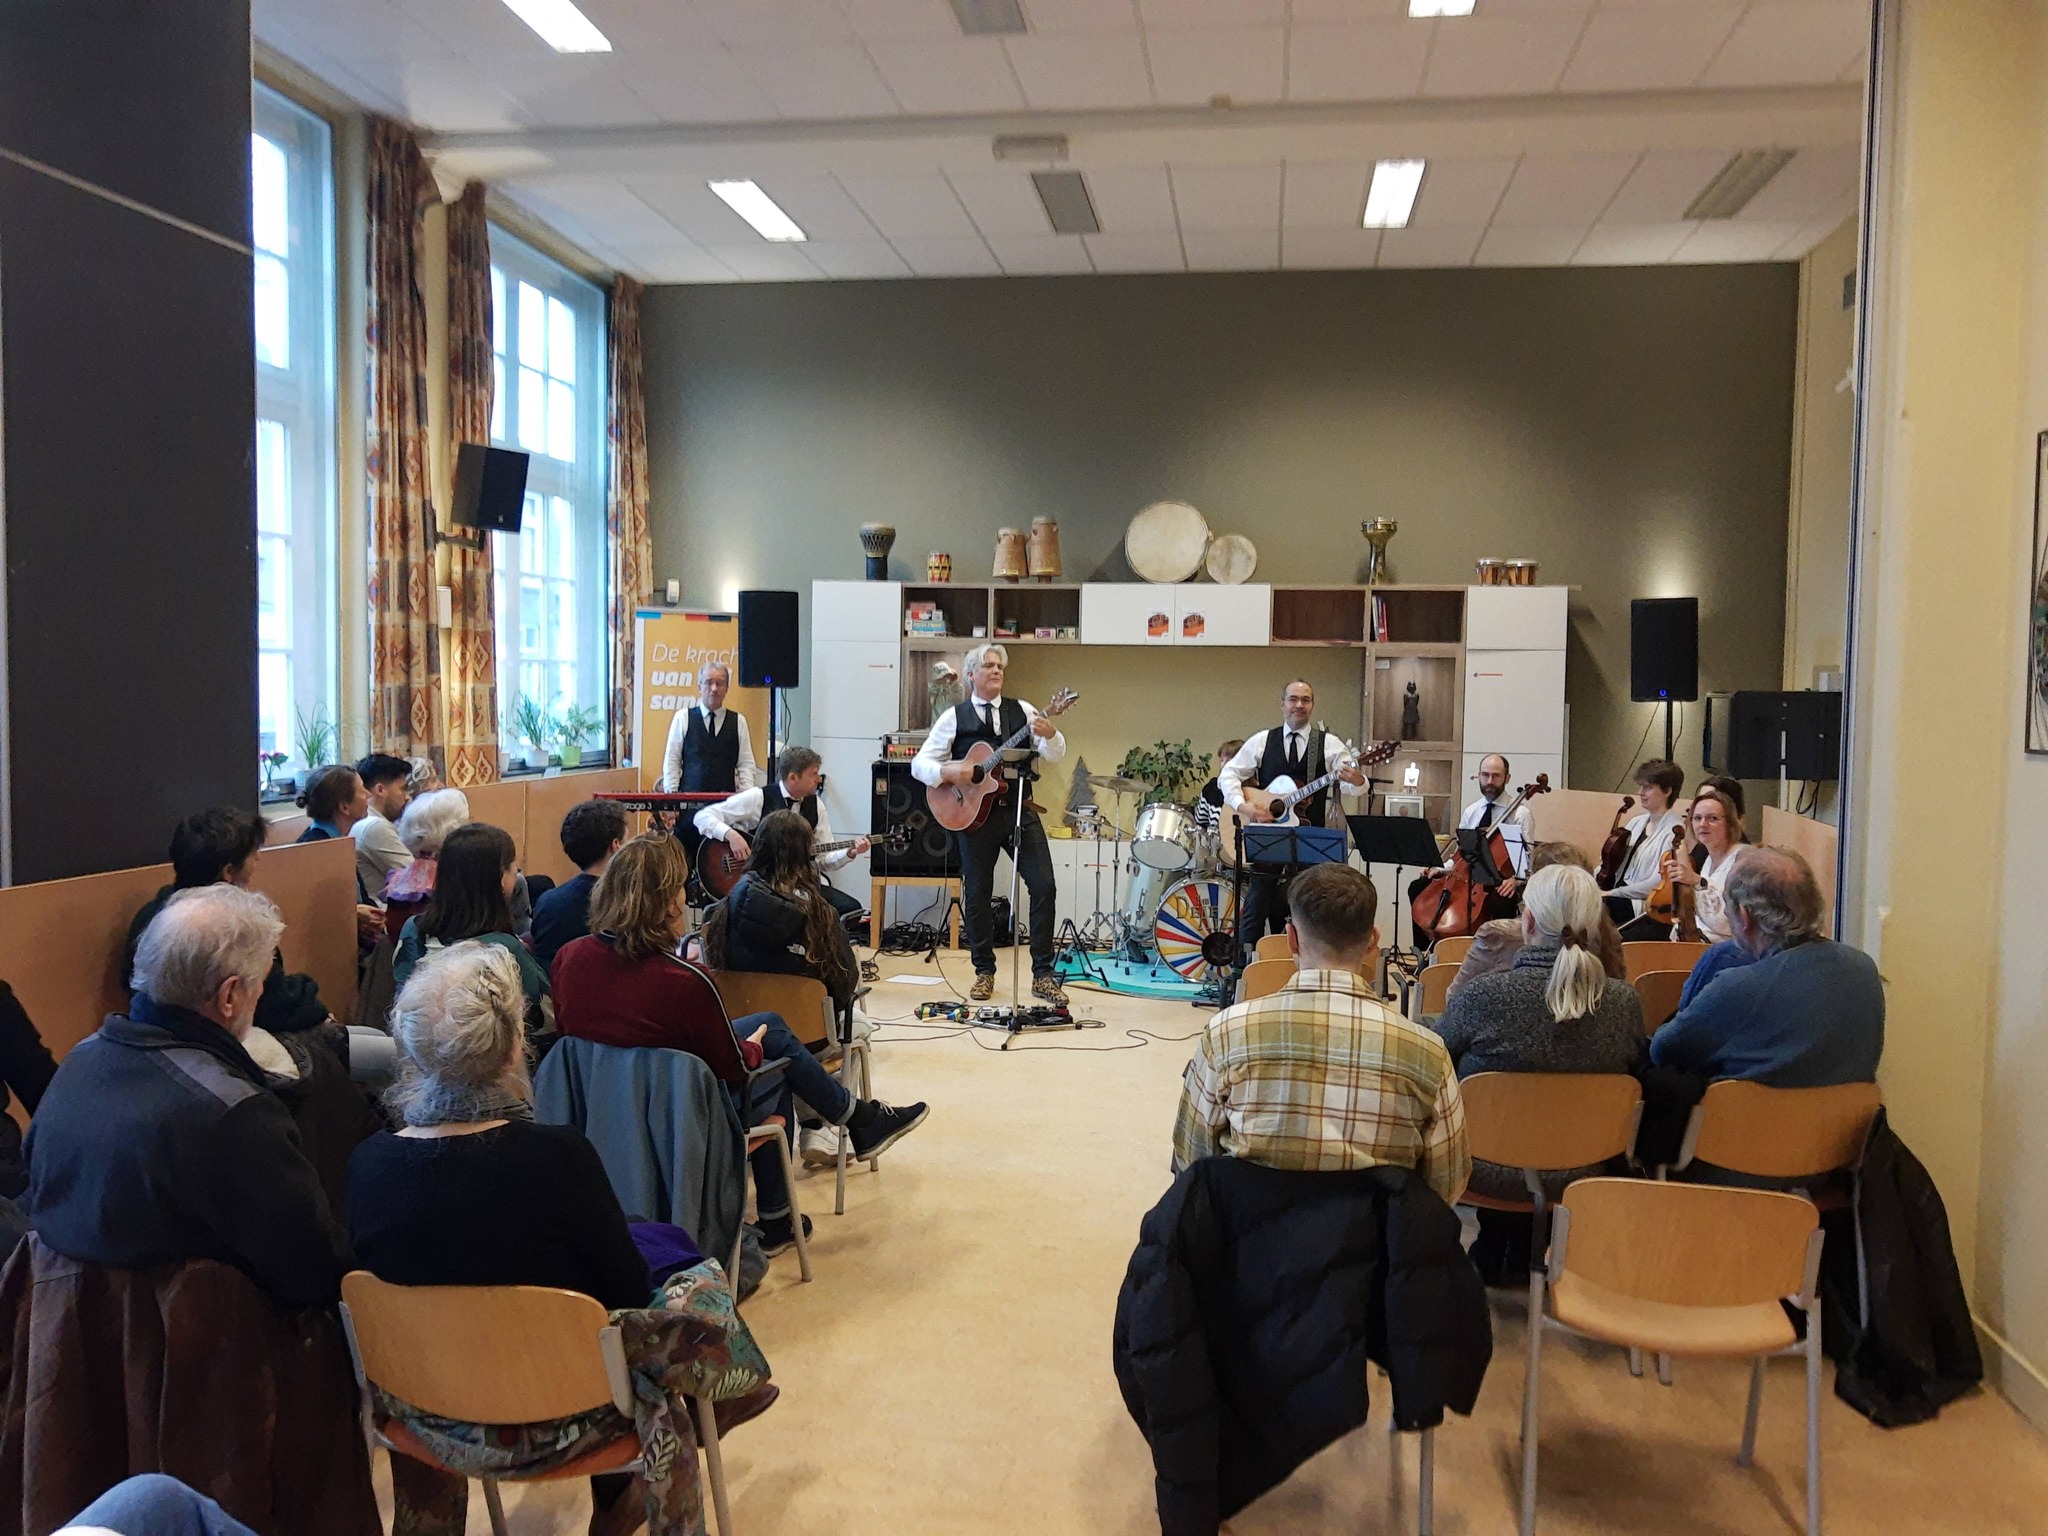 Muziekband The Deaf Aids kwam een middagje ‘gluren’ bij Buurtcentrum ROSA in Utrecht